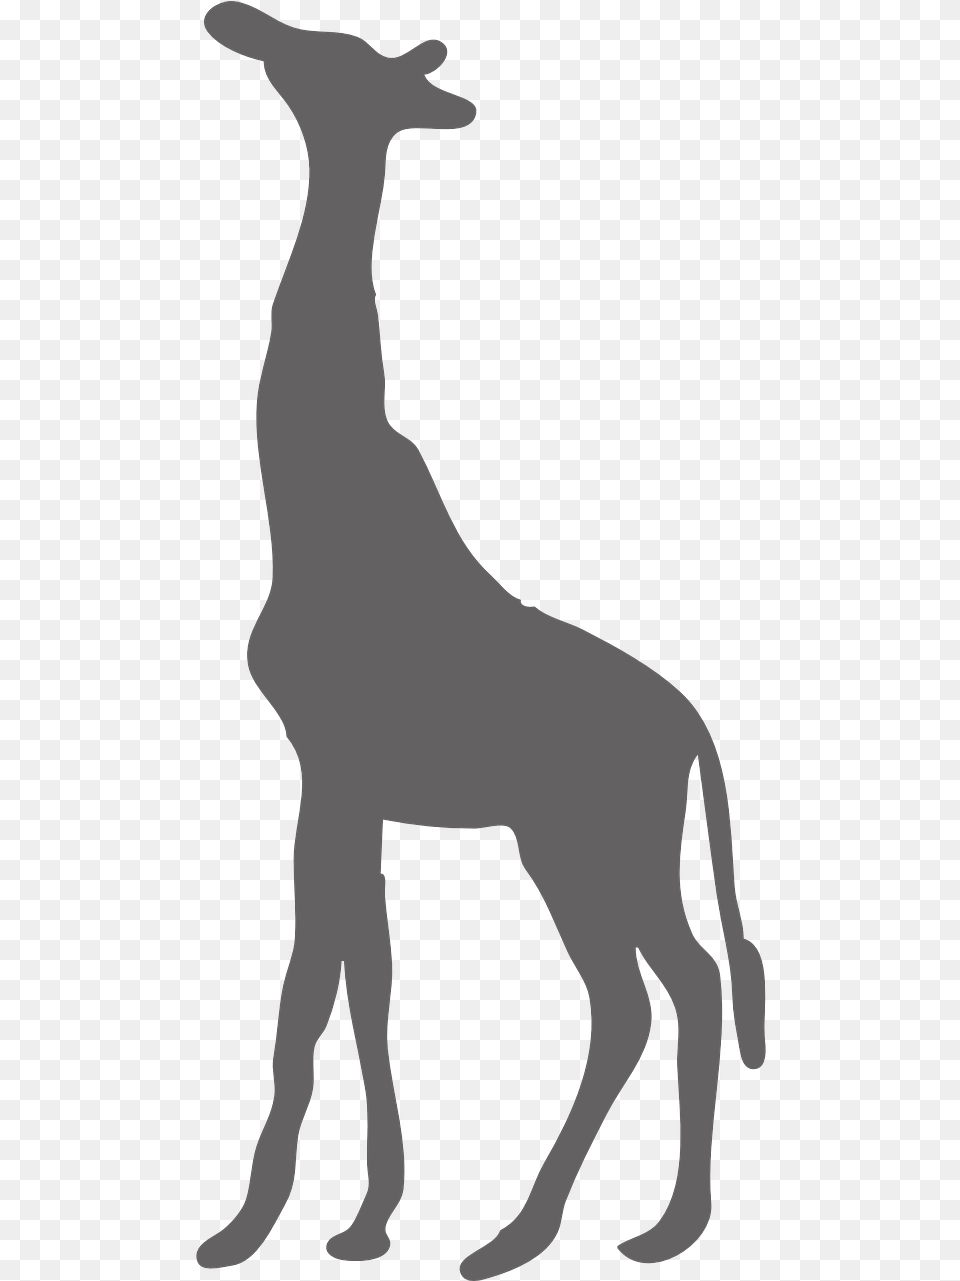 Wild Animal Safari Clipart Giraffe Silhouette, Stencil, Mammal, Person Free Png Download